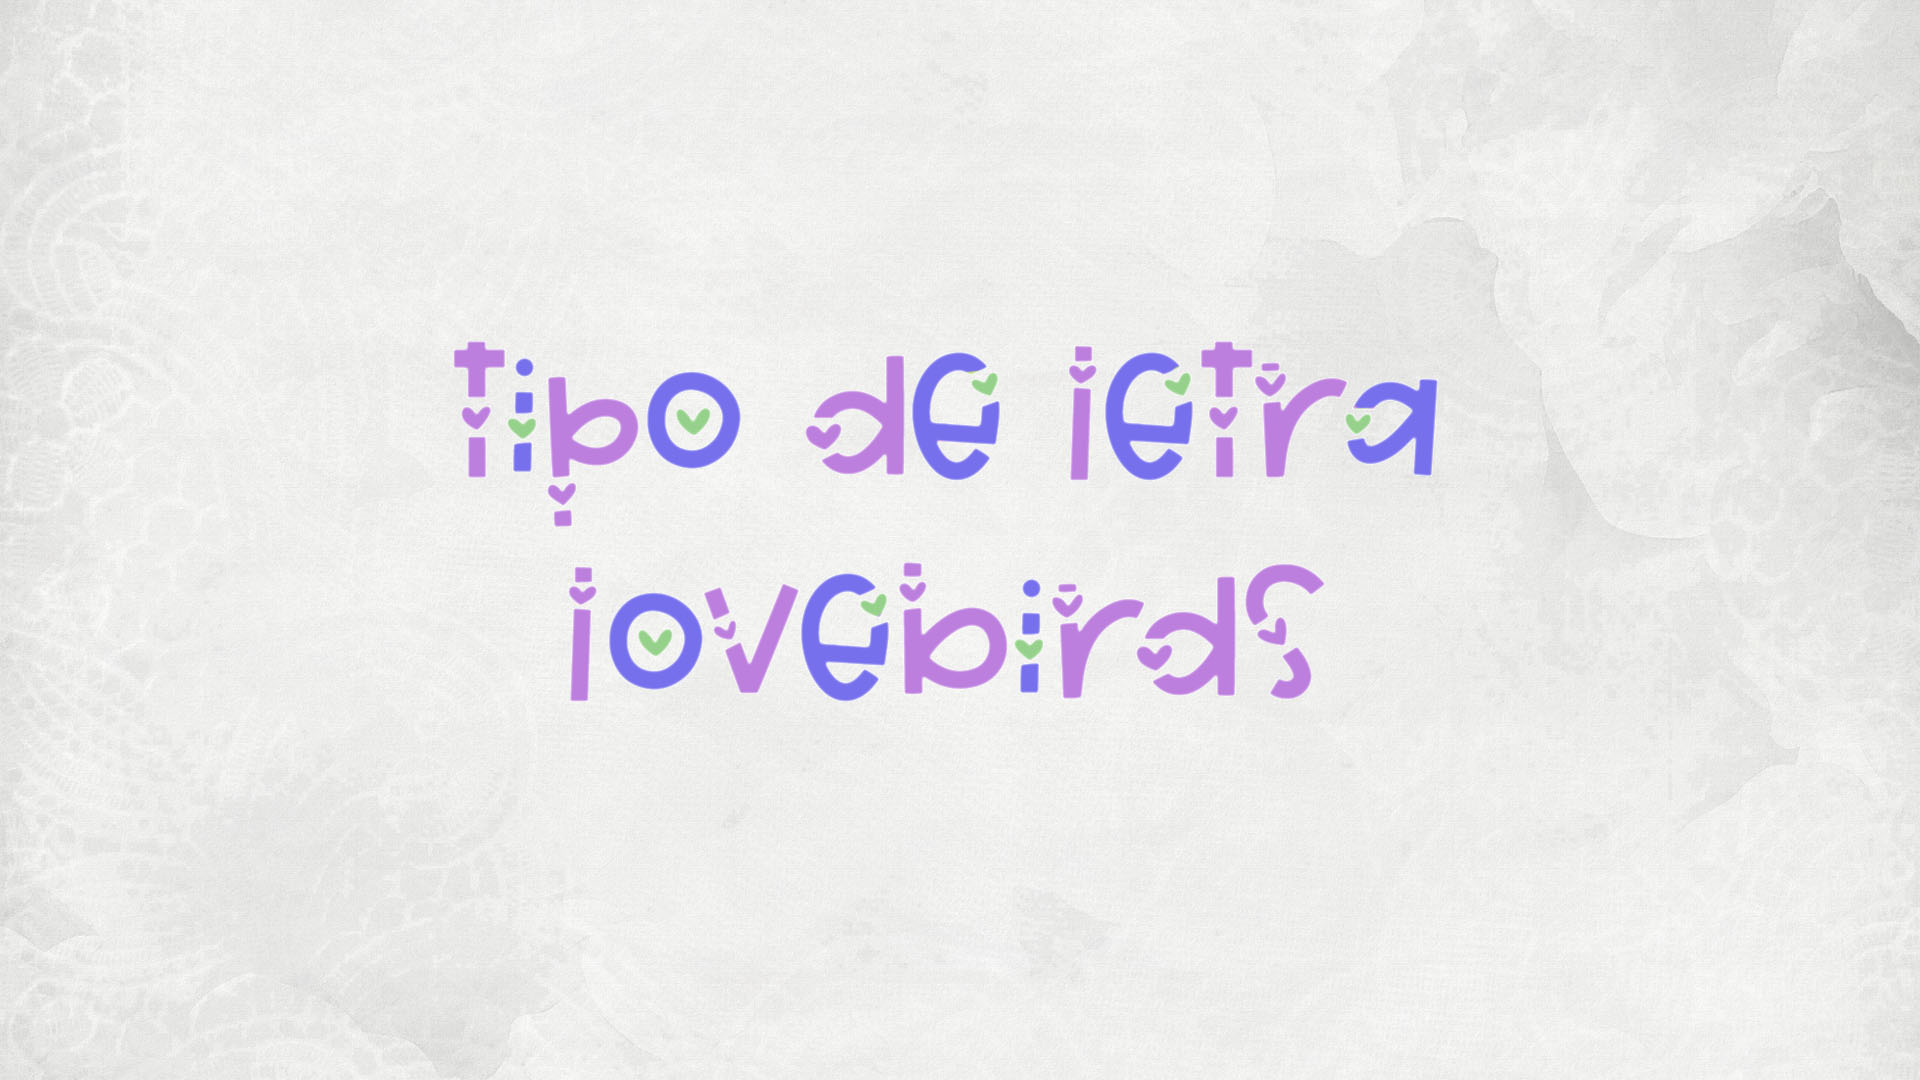 Tipo de Letra: LoveBirds